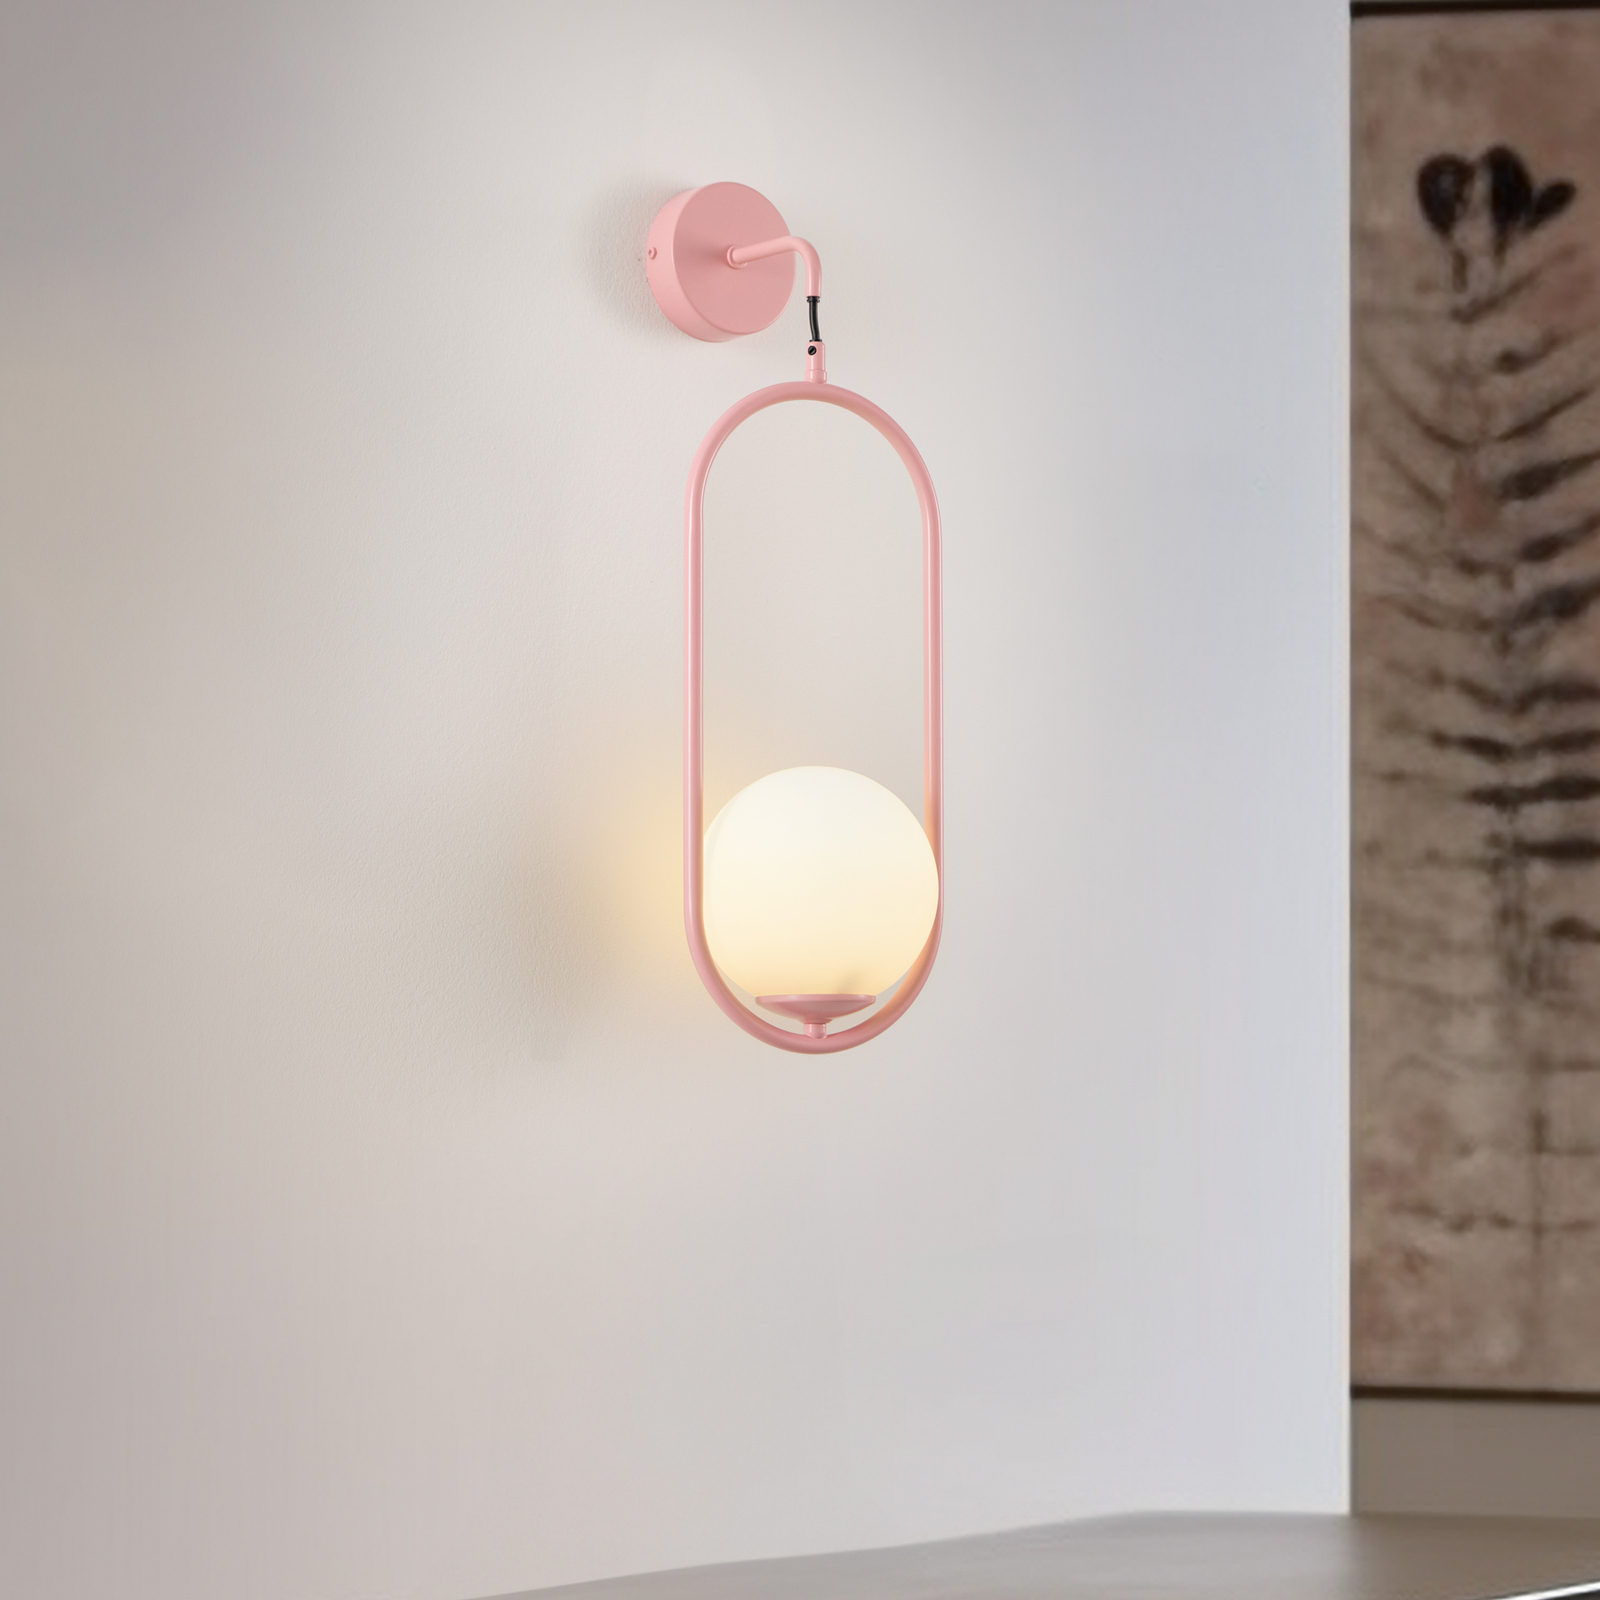 Samba wall light, 1-bulb, pink/white